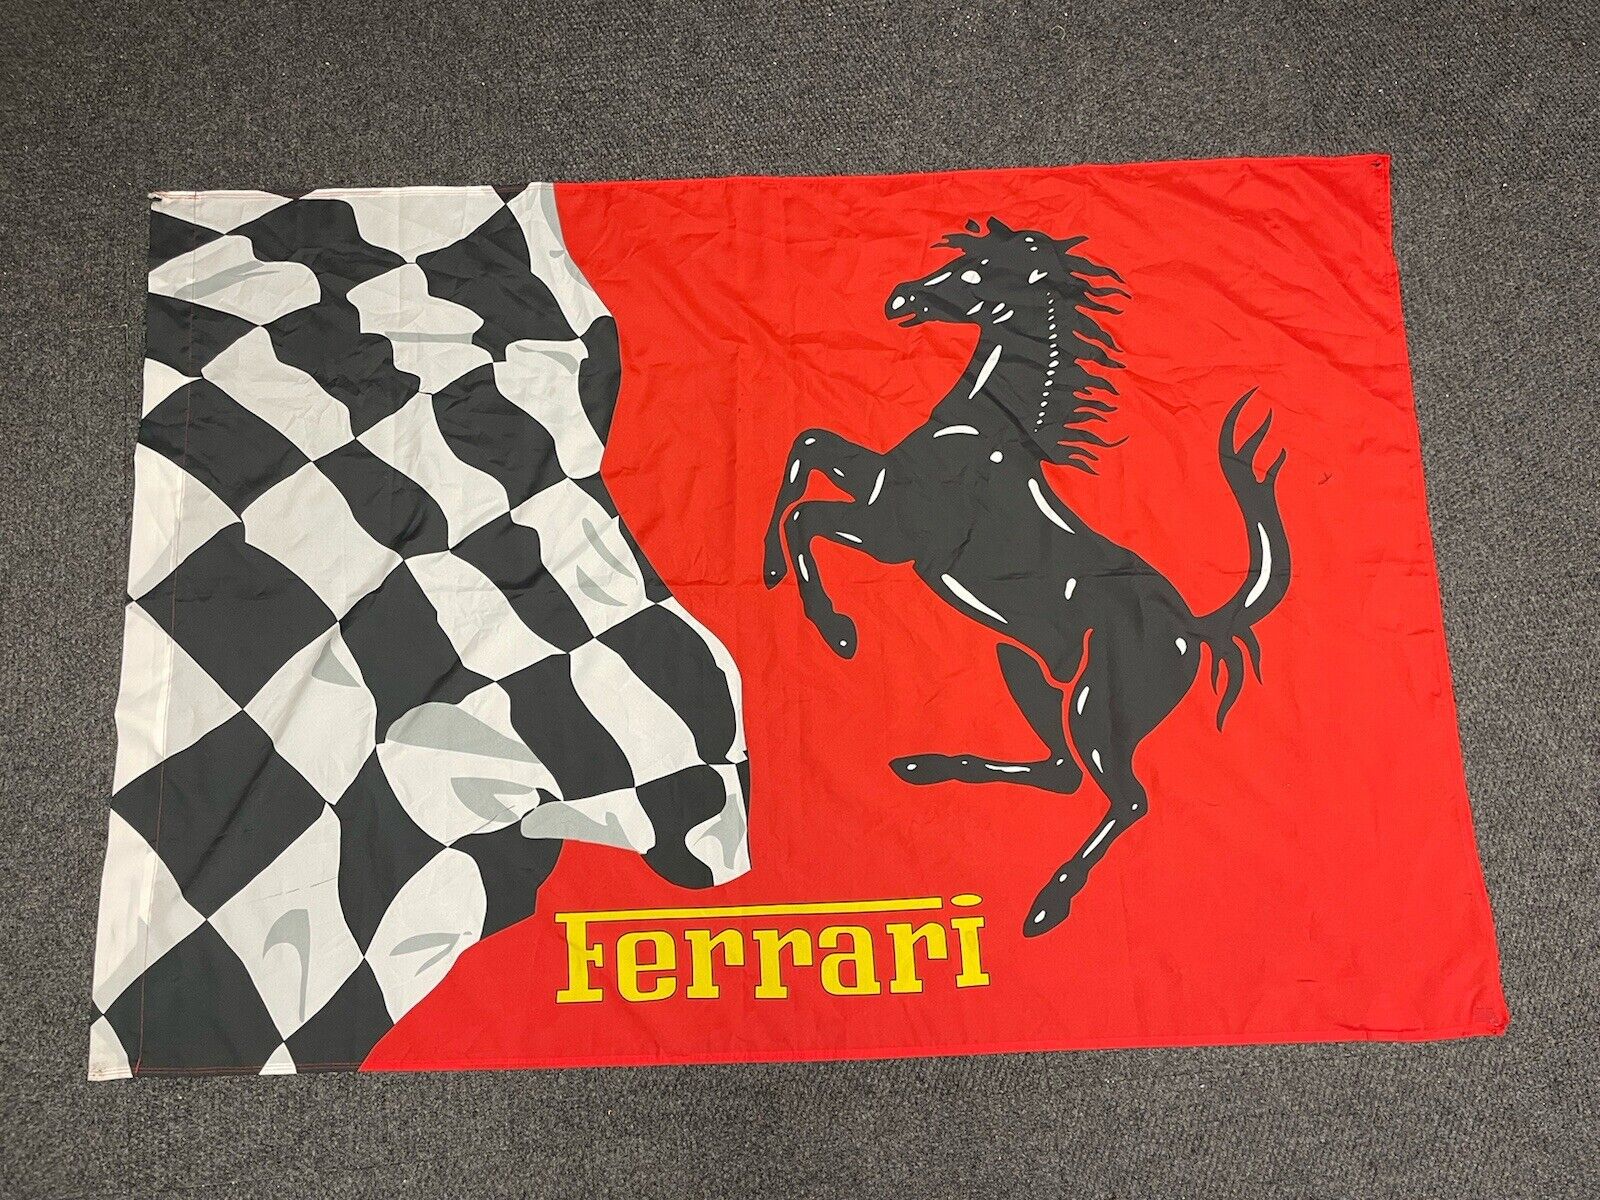 Official Ferrari Flag / Banner - Large - Over 6’ X 4’